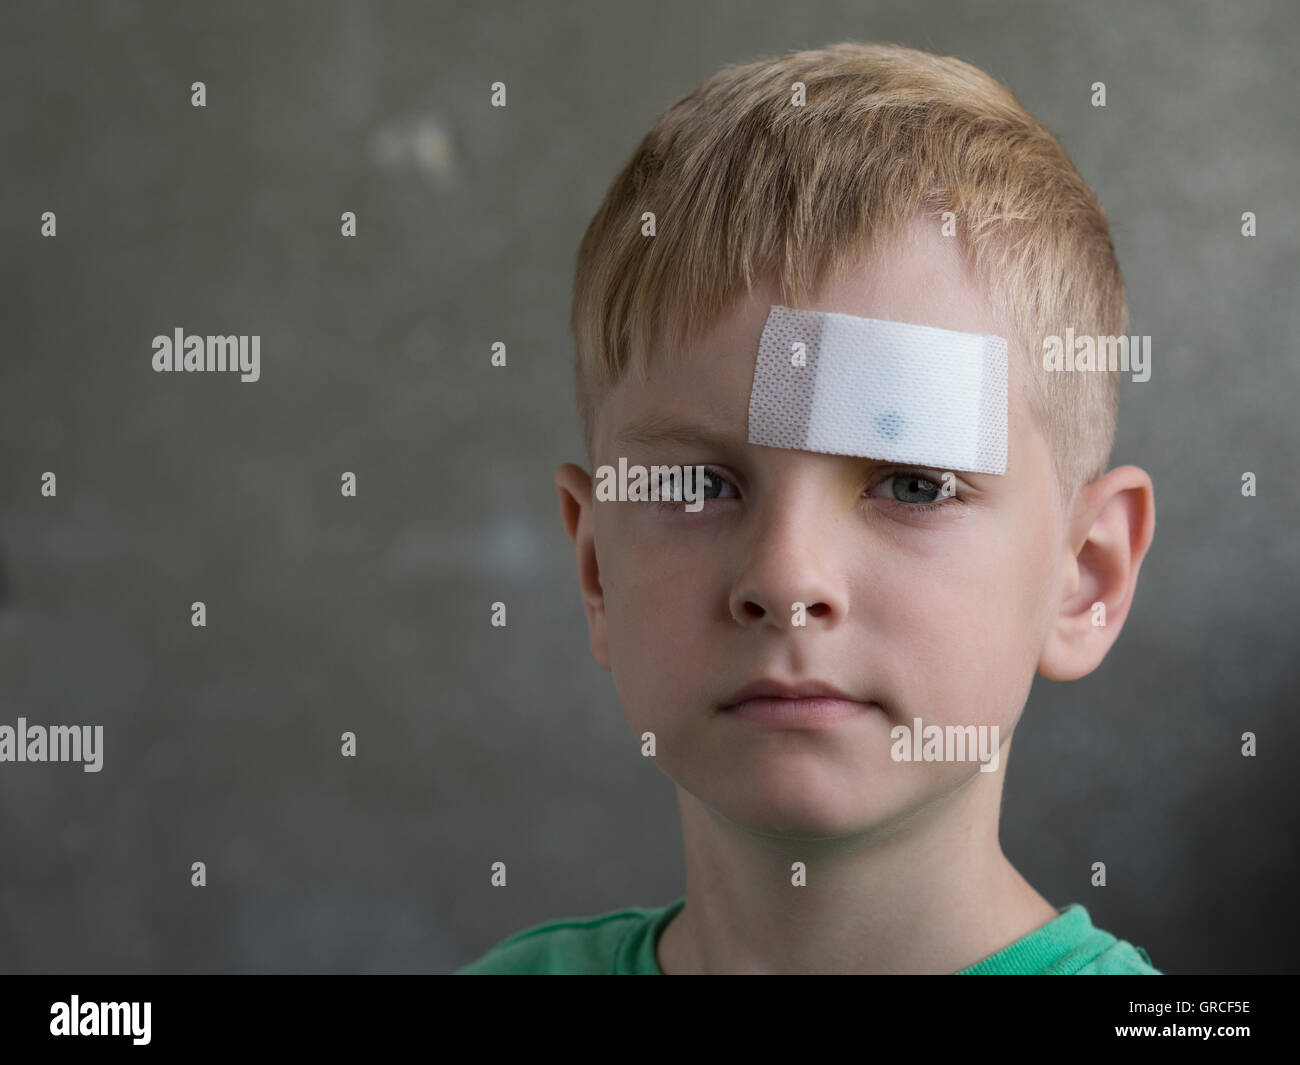 Young boy avec une blessure sur son front en plâtre Banque D'Images